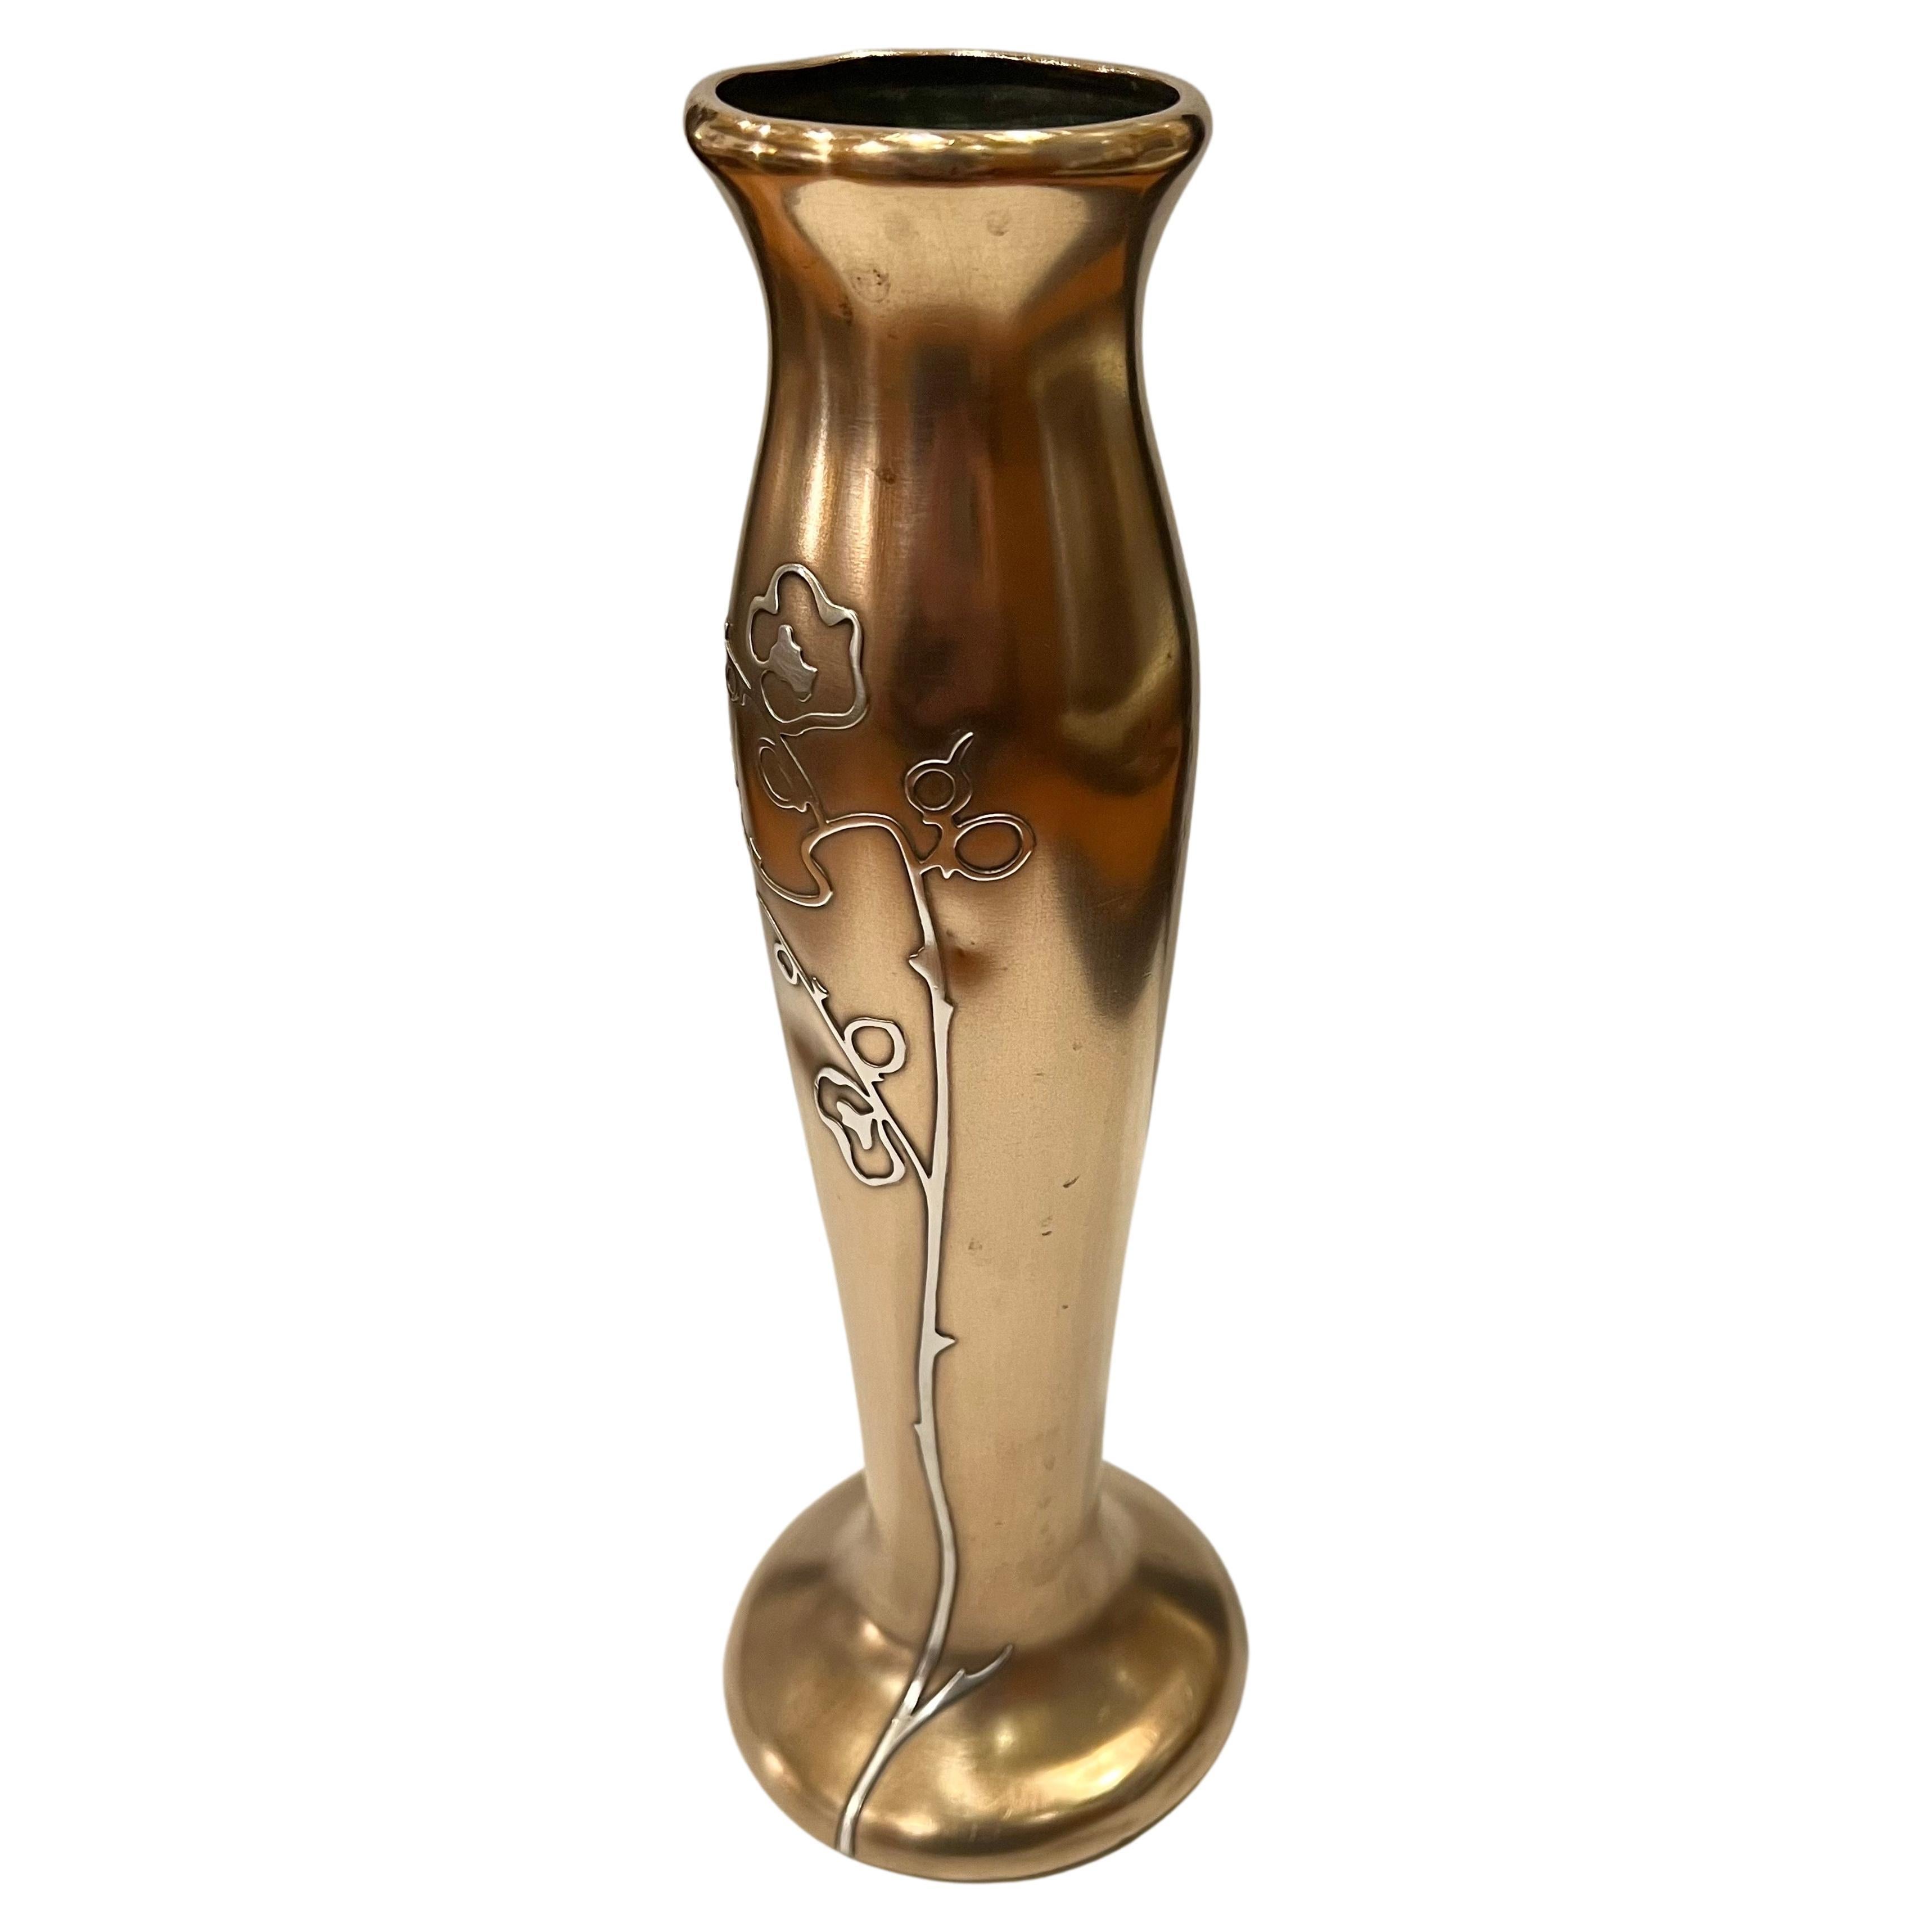 Diese Vase wurde von den Kunsthandwerkern der Heintz Art Metal Shop um 1915 entworfen und handgefertigt. Die handgeschmiedete Vase aus Bronze hat eine konische Form mit ausgestelltem Boden und Rand. Eine zart gegliederte Allium mit geschwungenem